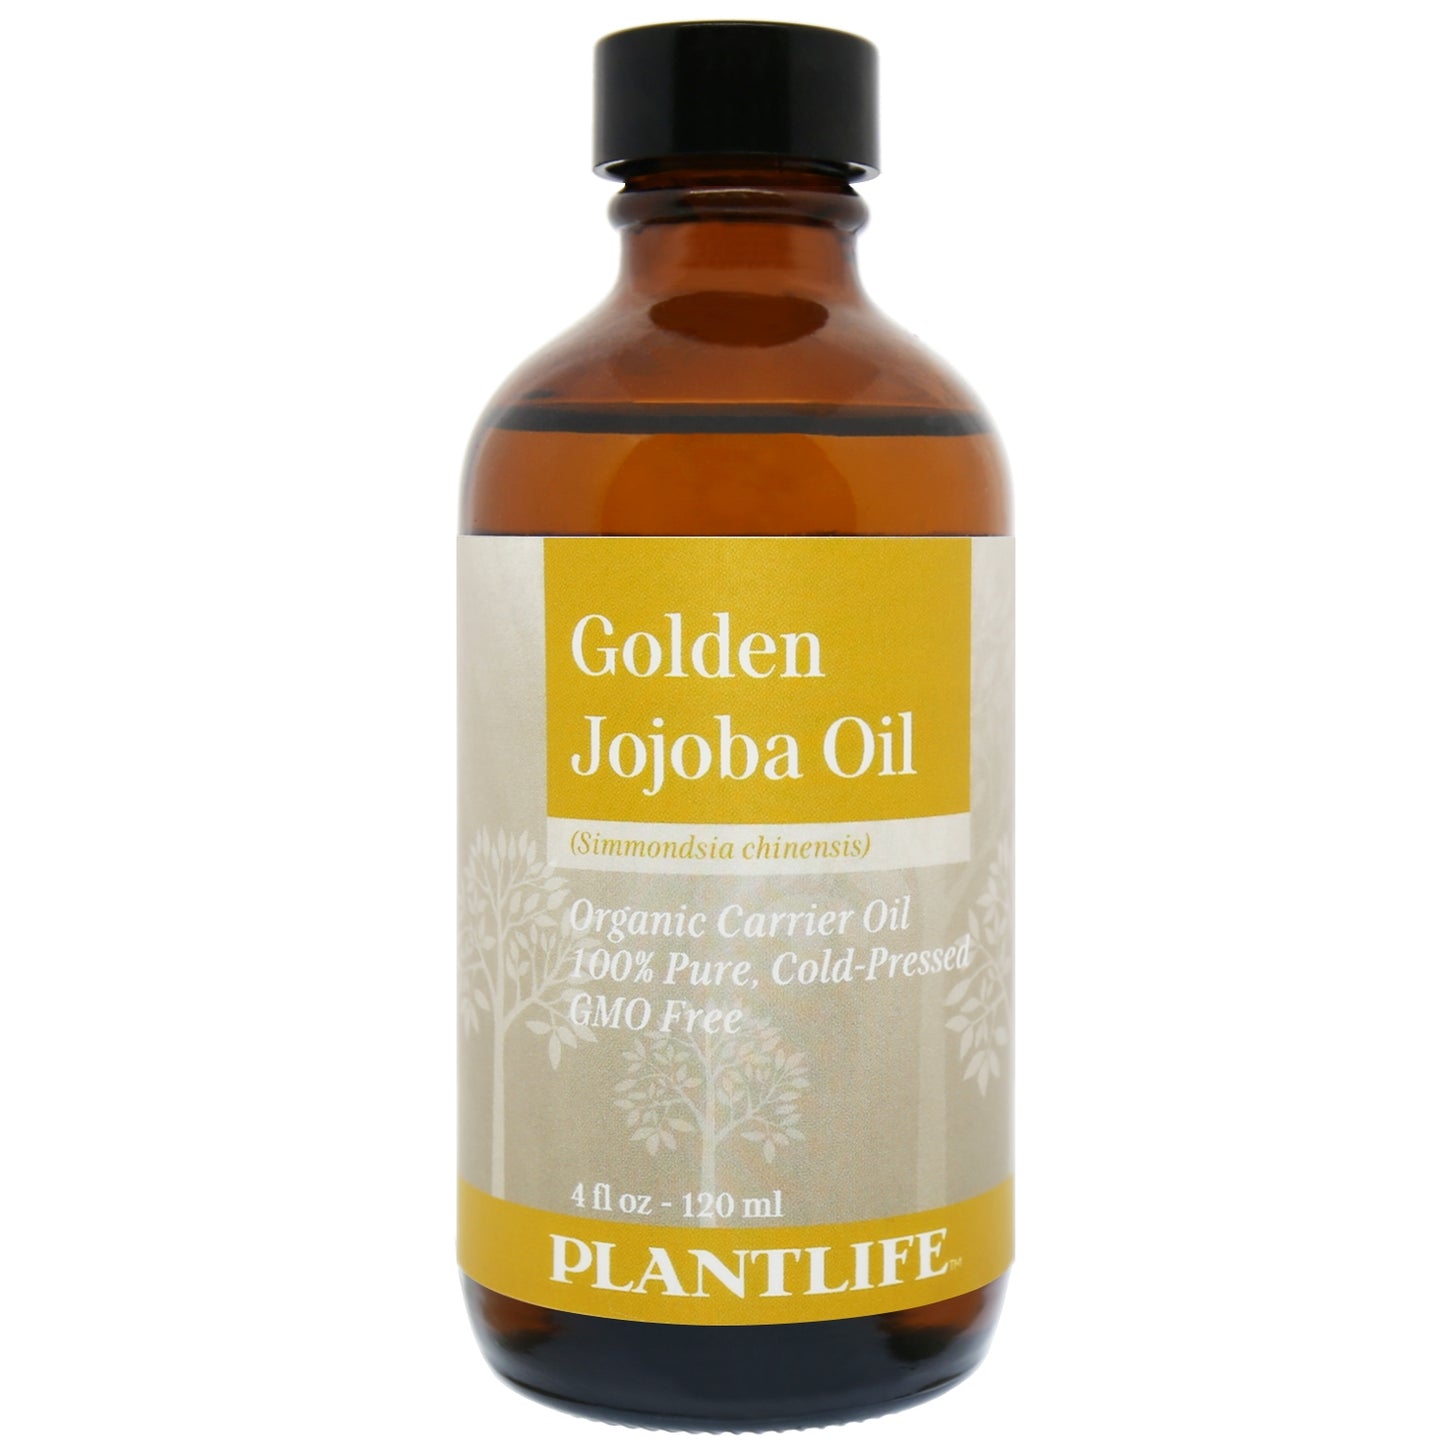 Golden jojoba oil 4oz